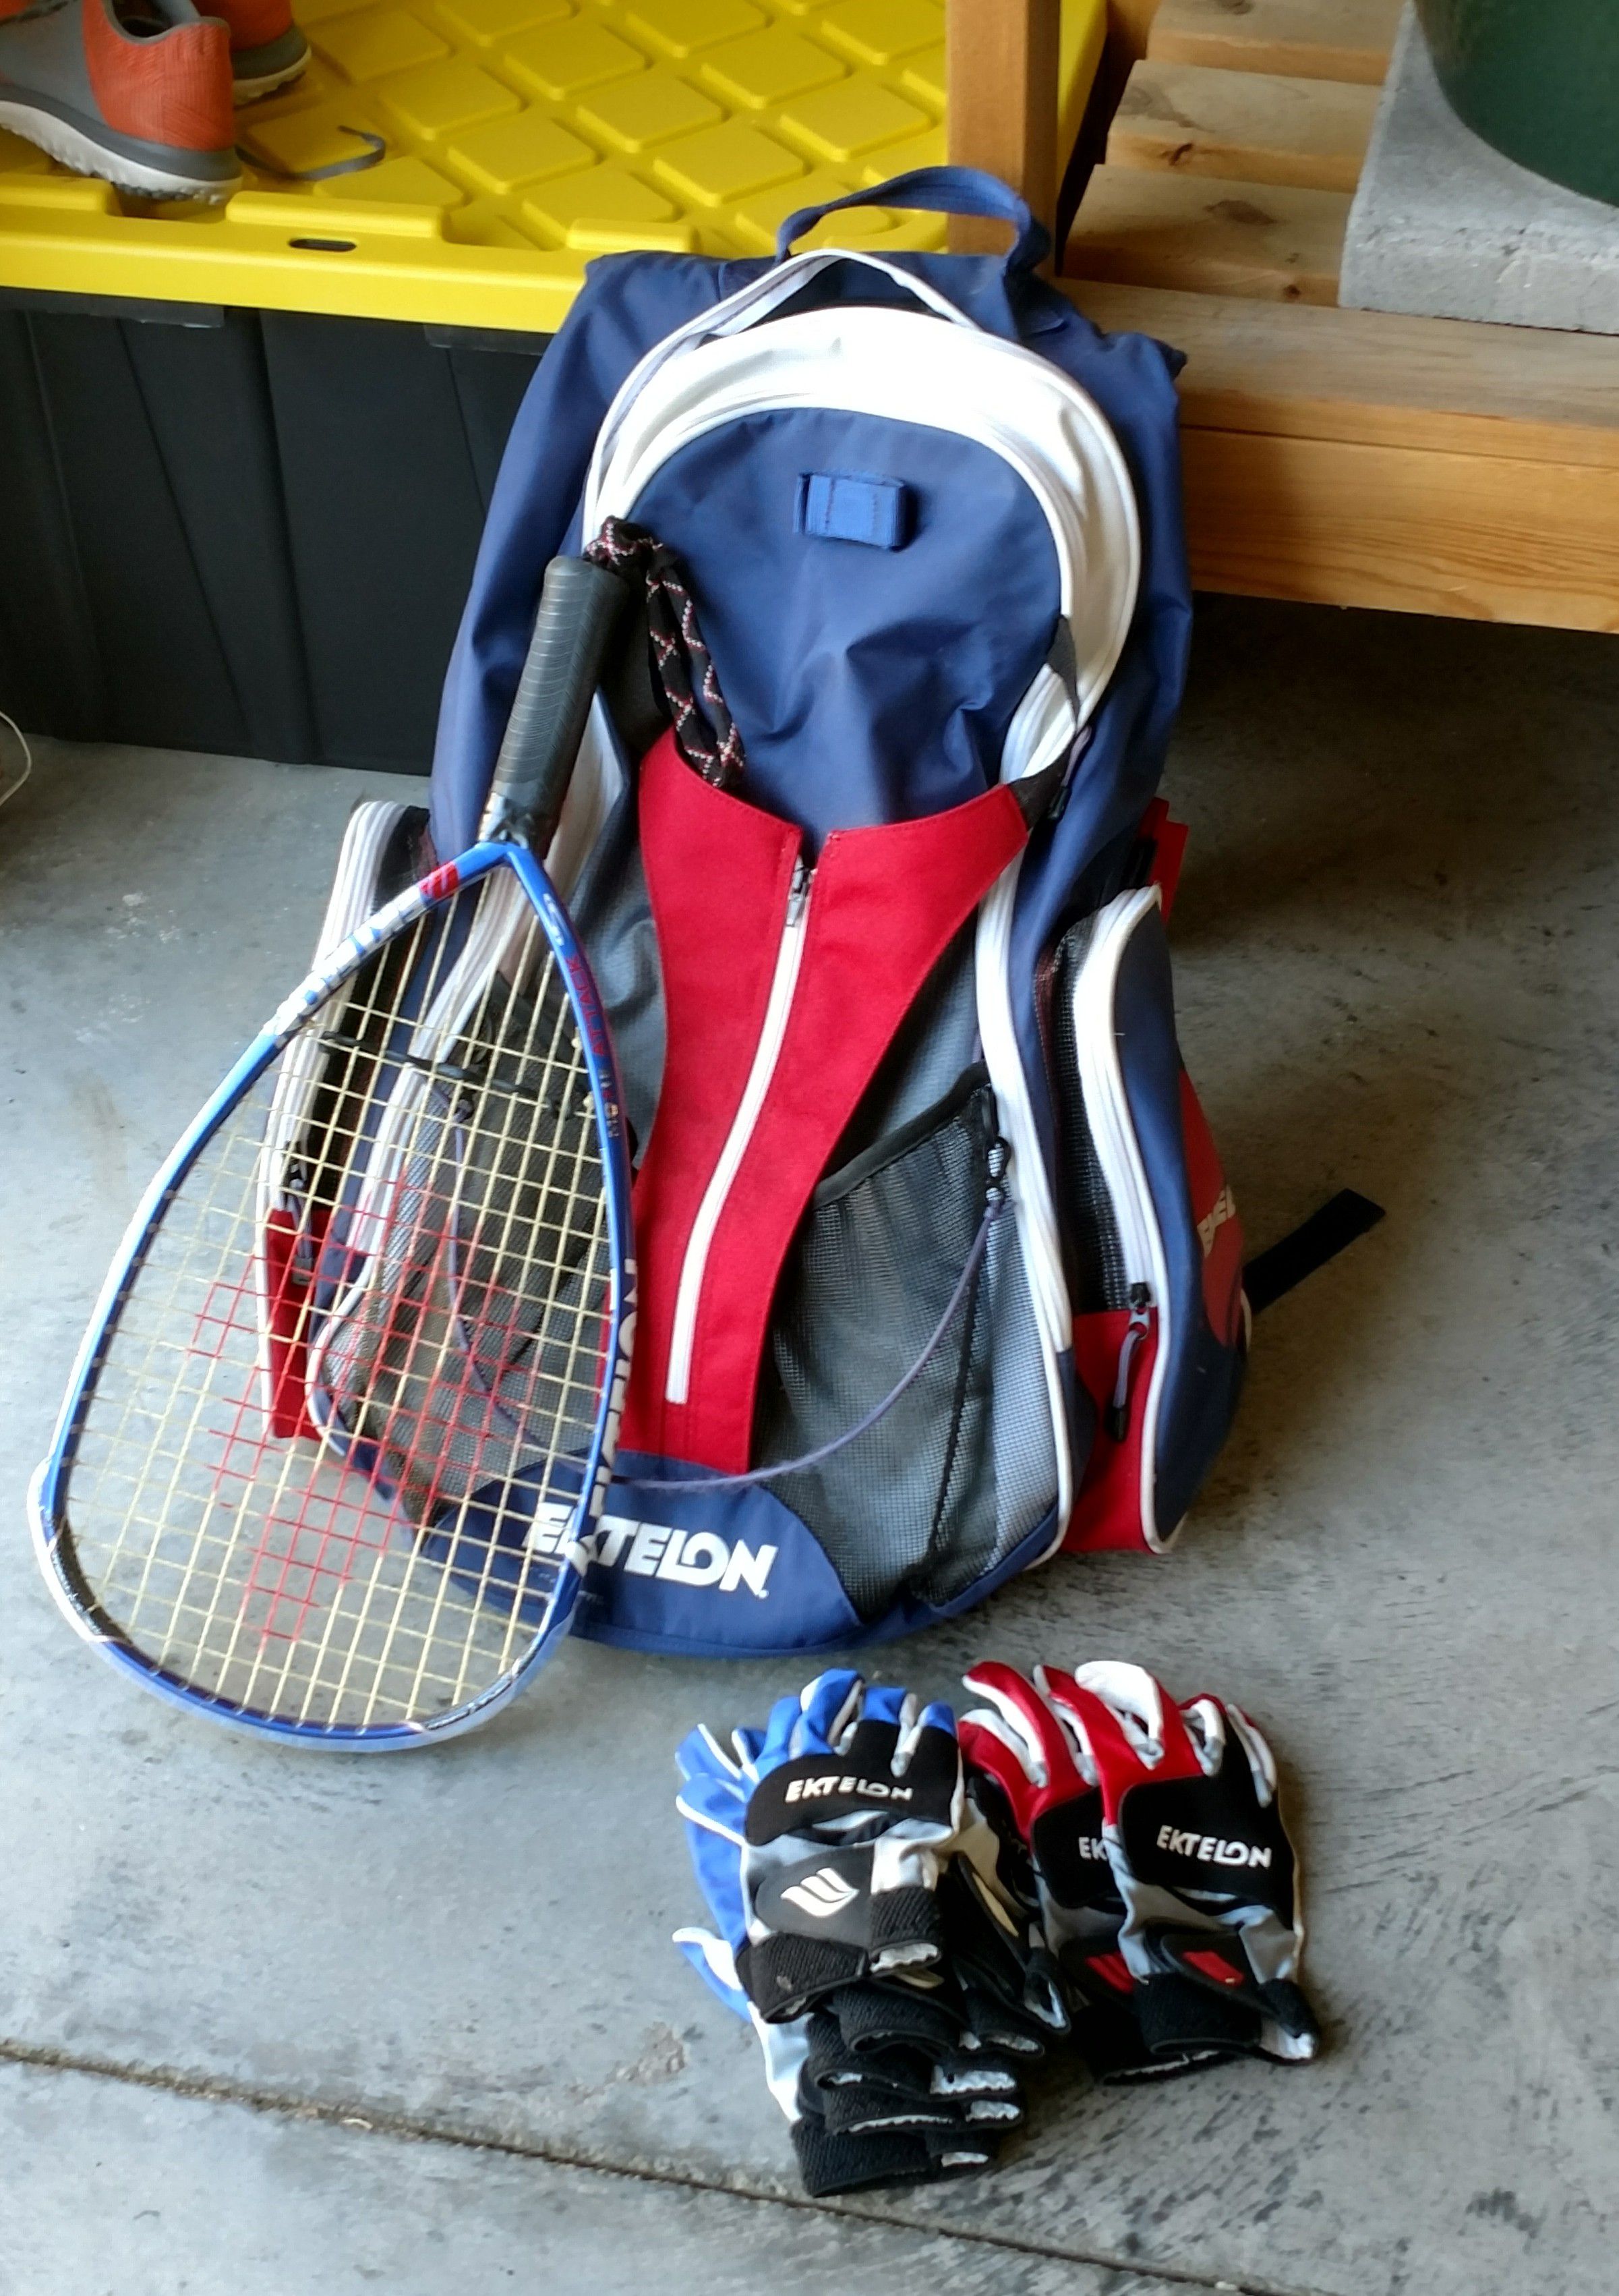 Racquetball gear